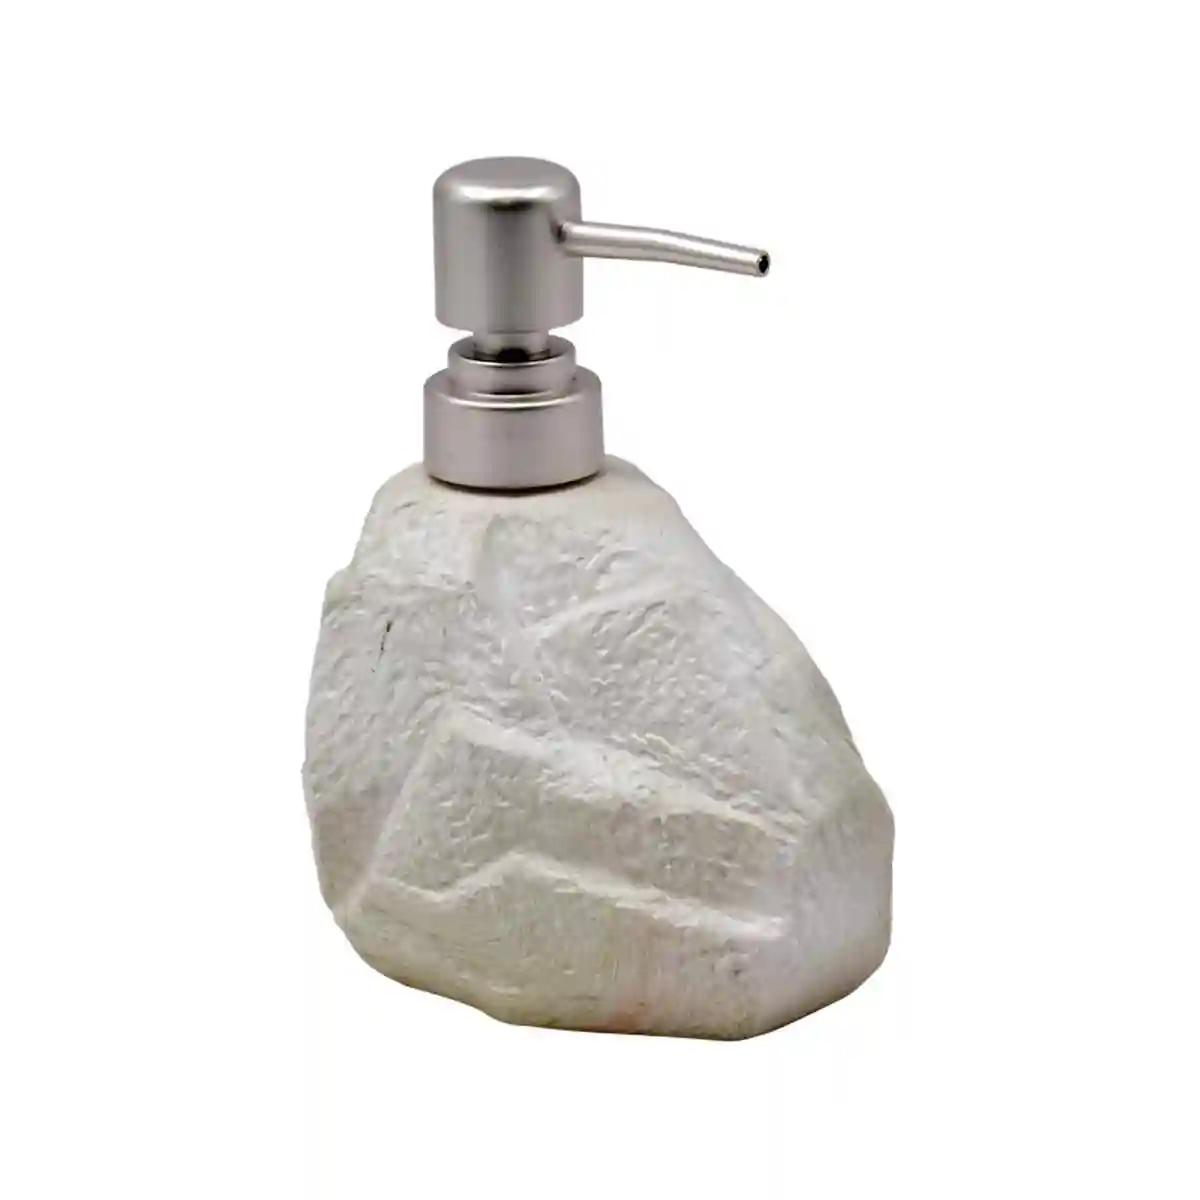 Kookee Ceramic Soap Dispenser for Bathroom handwash, refillable pump bottle for Kitchen hand wash basin, Set of 1 - Off White (7948)